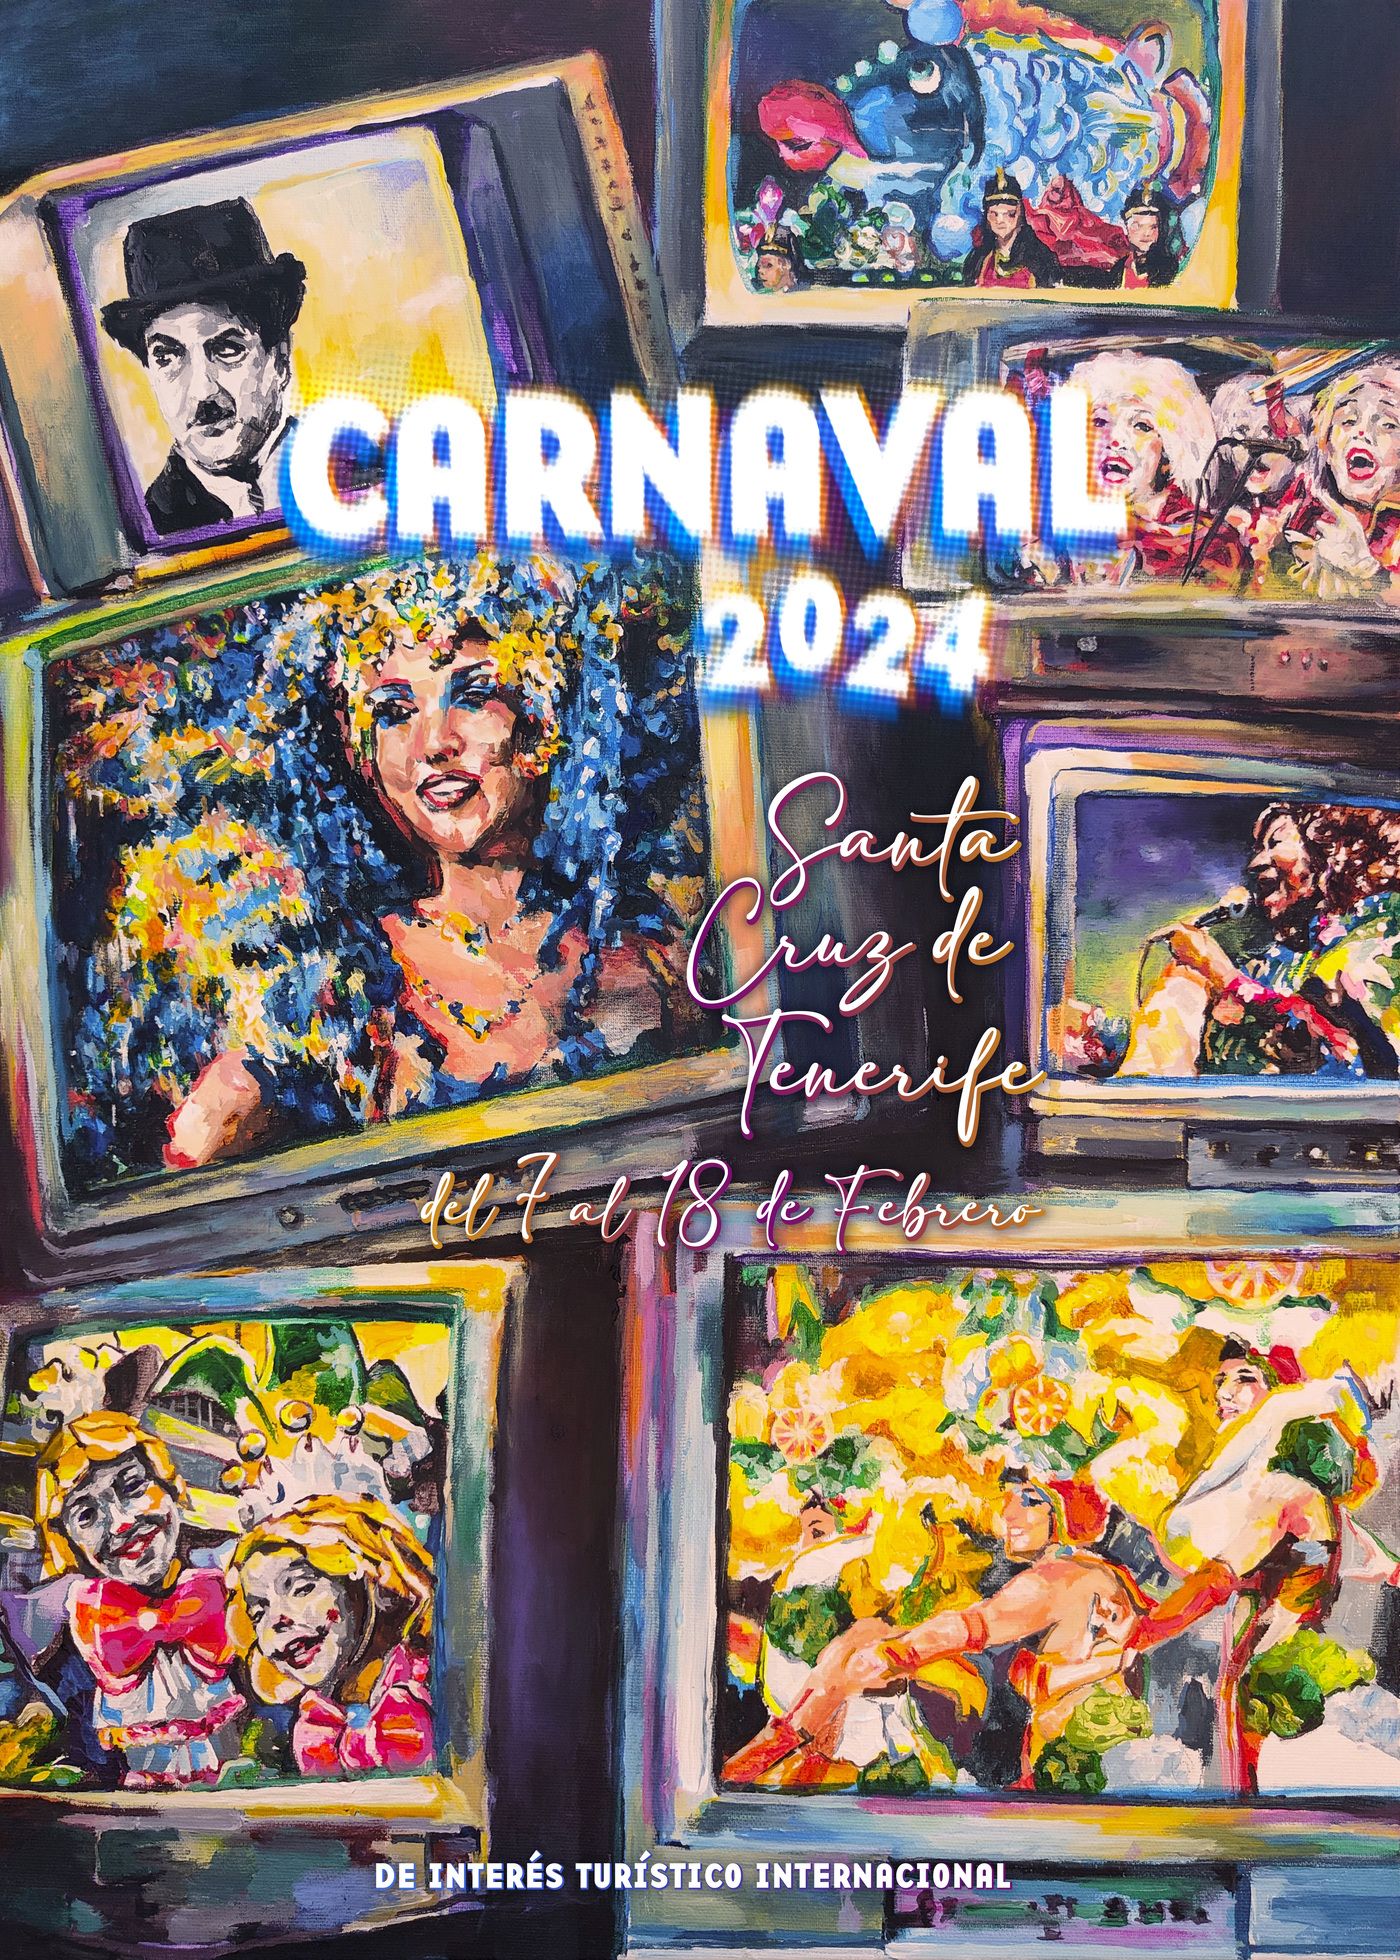 09 Vive en la televisi�n el Carnaval de mi coraz�n (1).jpg